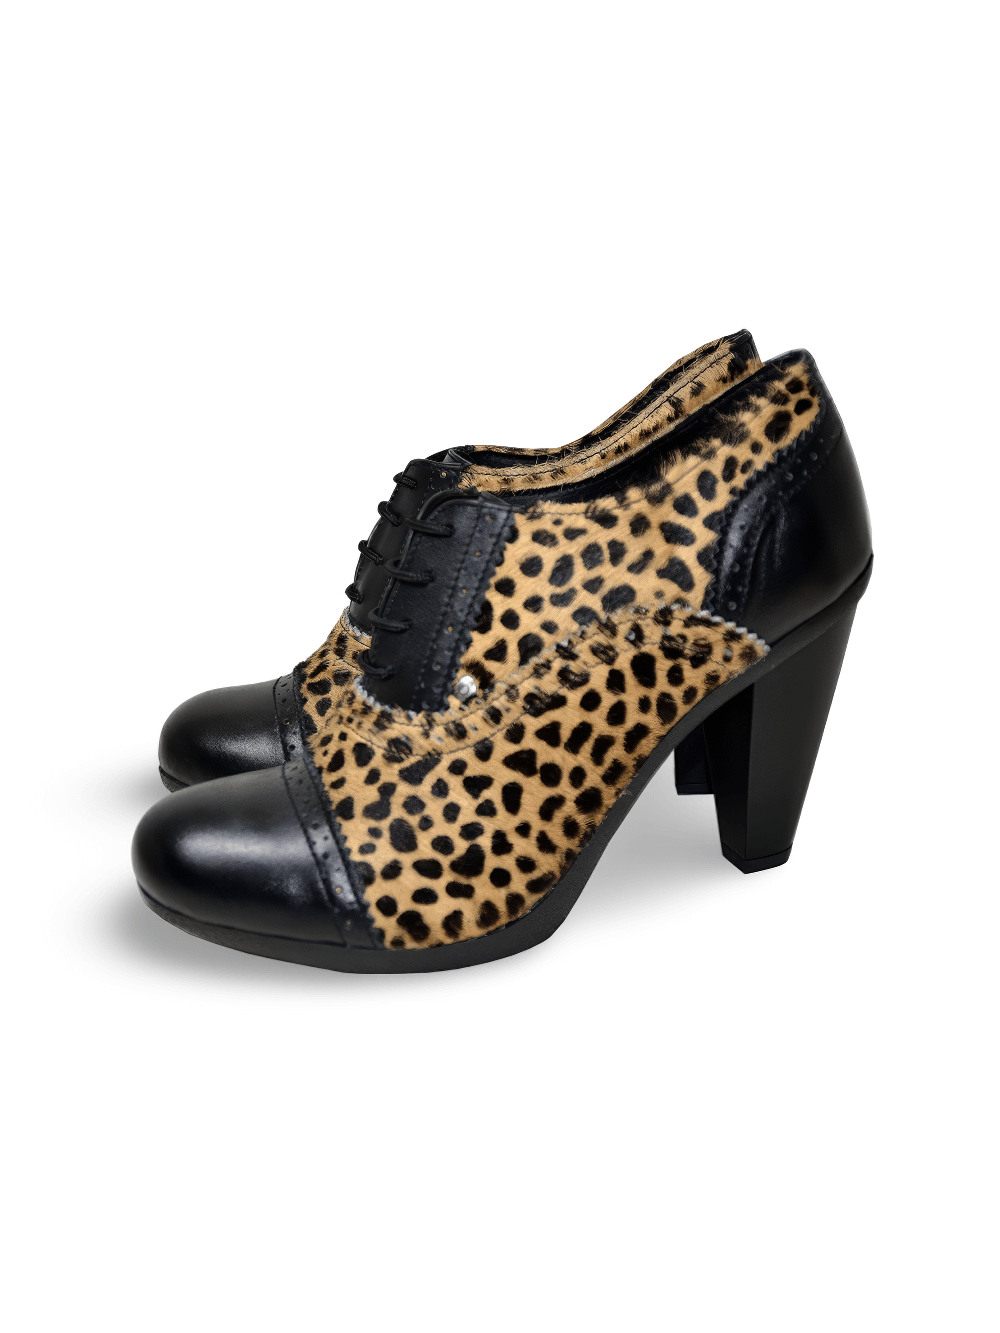 Leopard Print High-Heel Fur Booties for Women